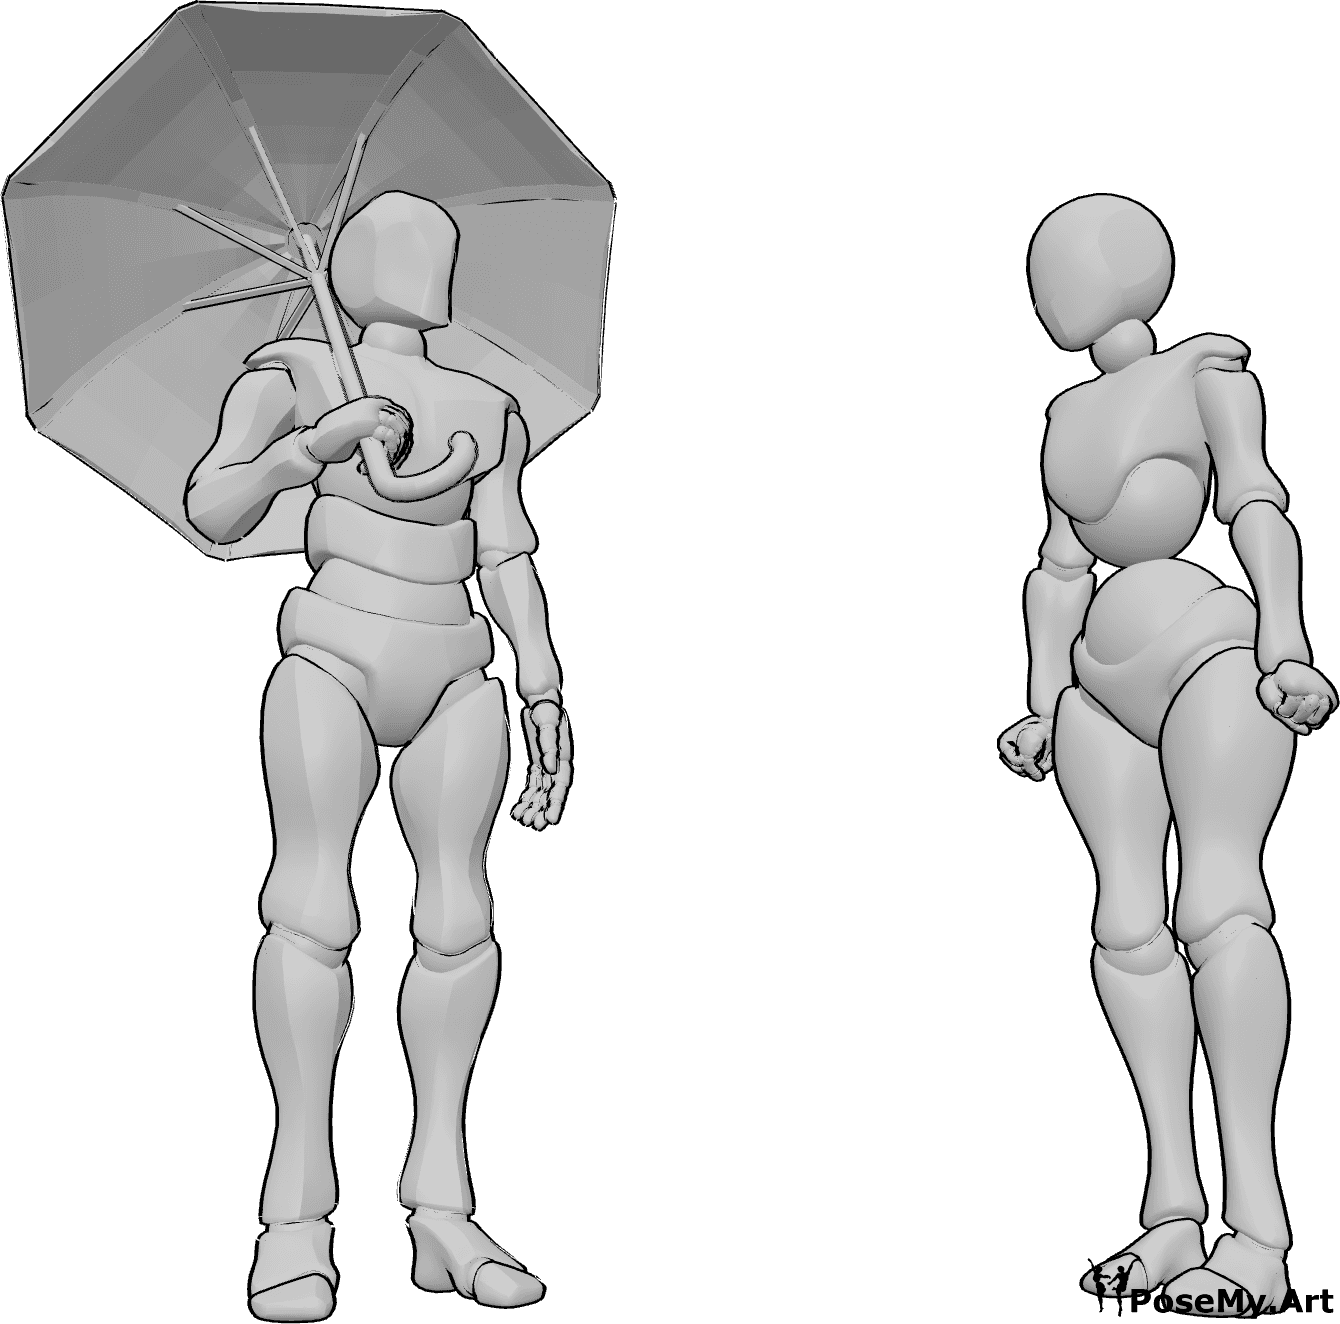 Referência de poses- Mulher sem pose de guarda-chuva - O homem está a segurar um guarda-chuva e a olhar para a mulher que está zangada